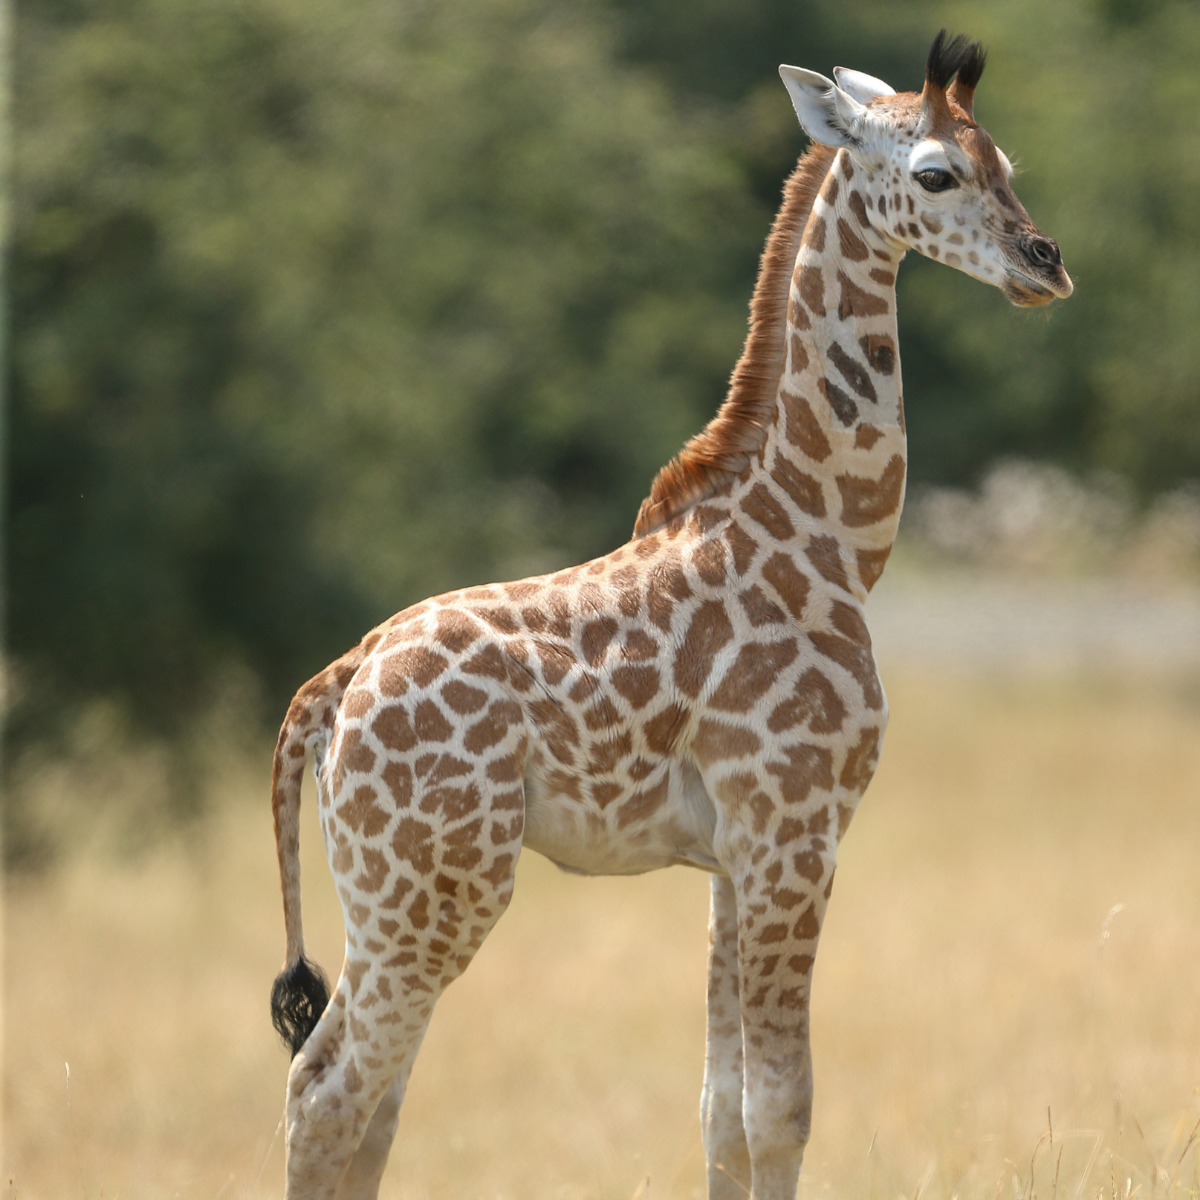 Adopt a Giraffe